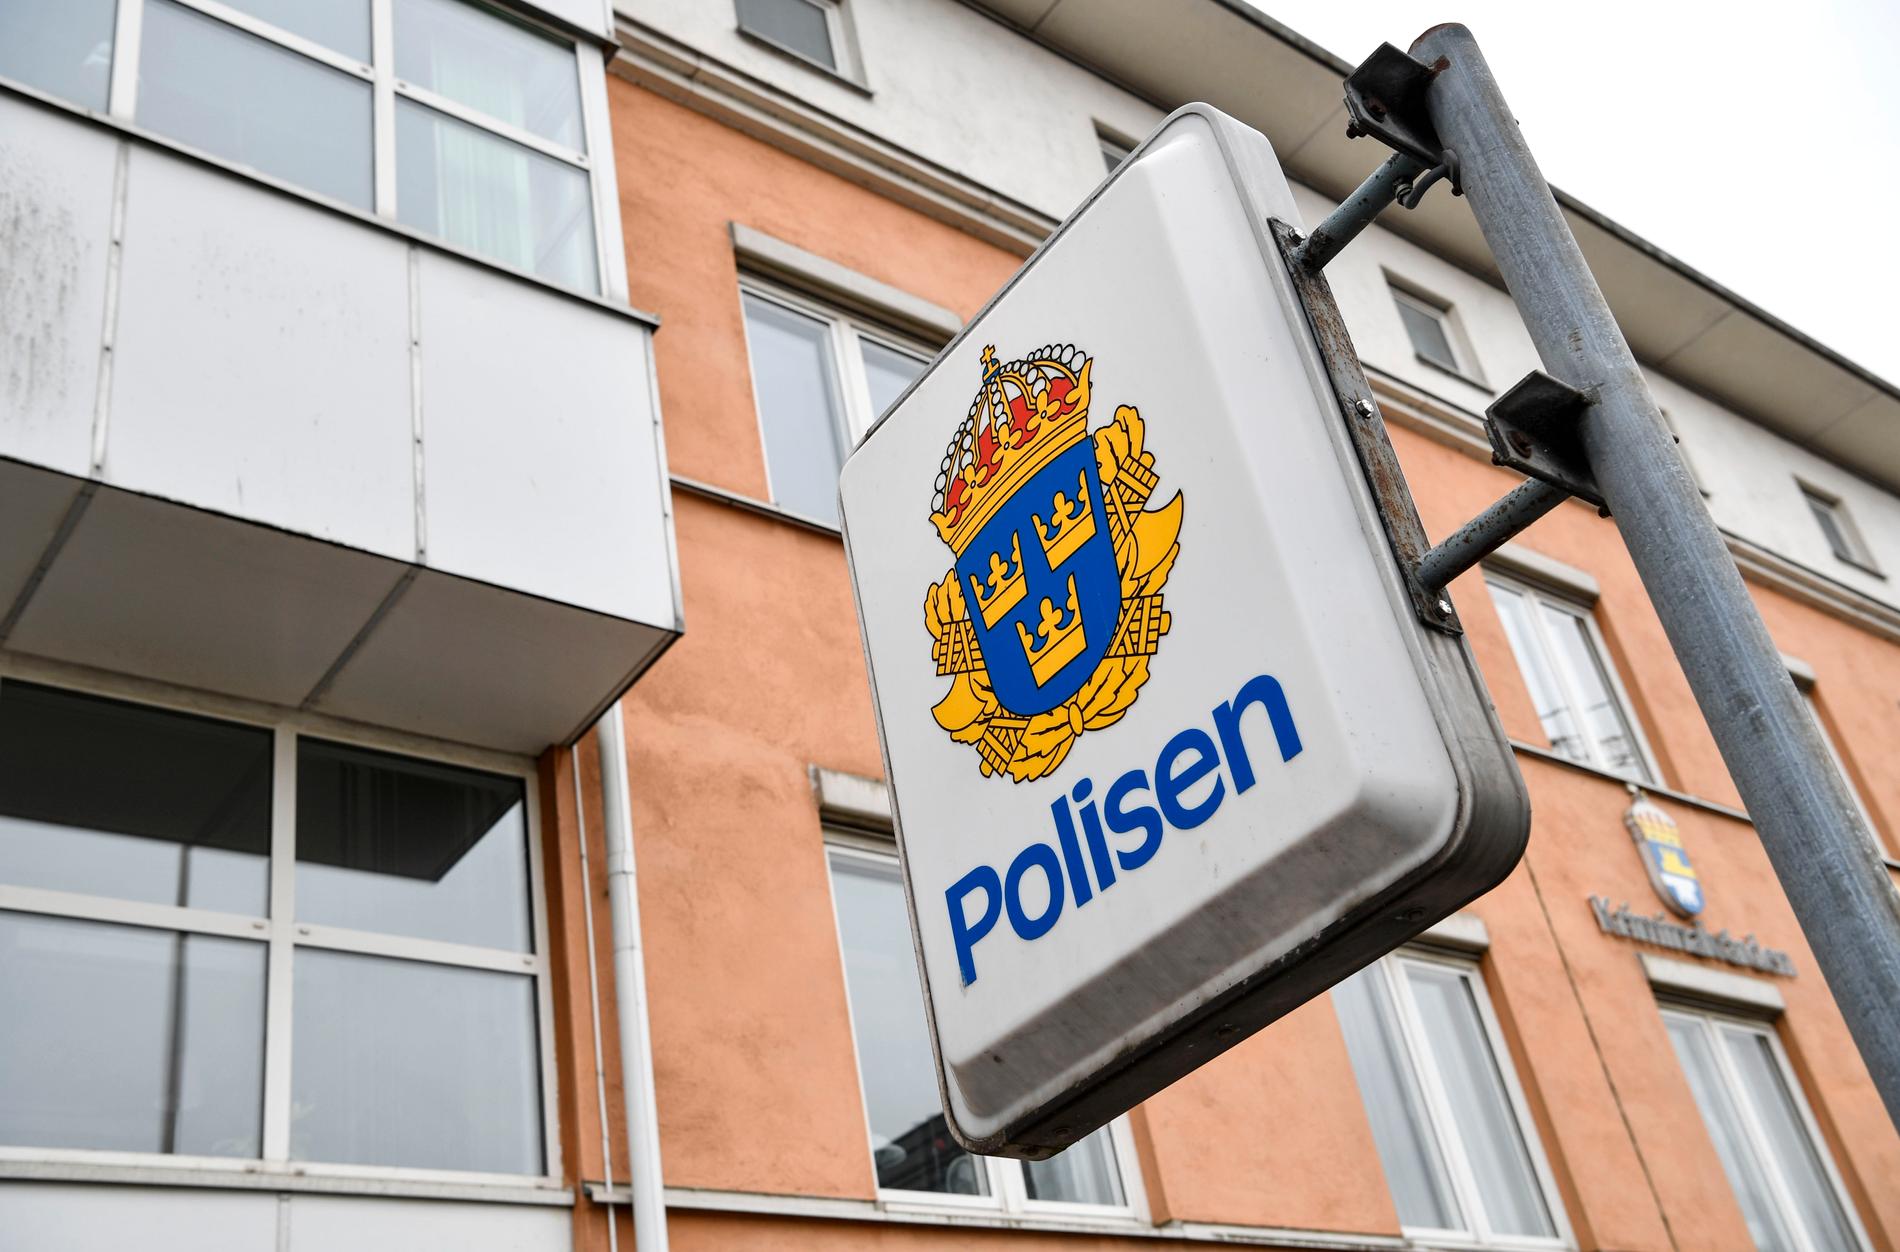 Ritningar över polishus finns fortfarande tillgängliga på nätet, rapporterar P4 Östergötland. Arkivbild.